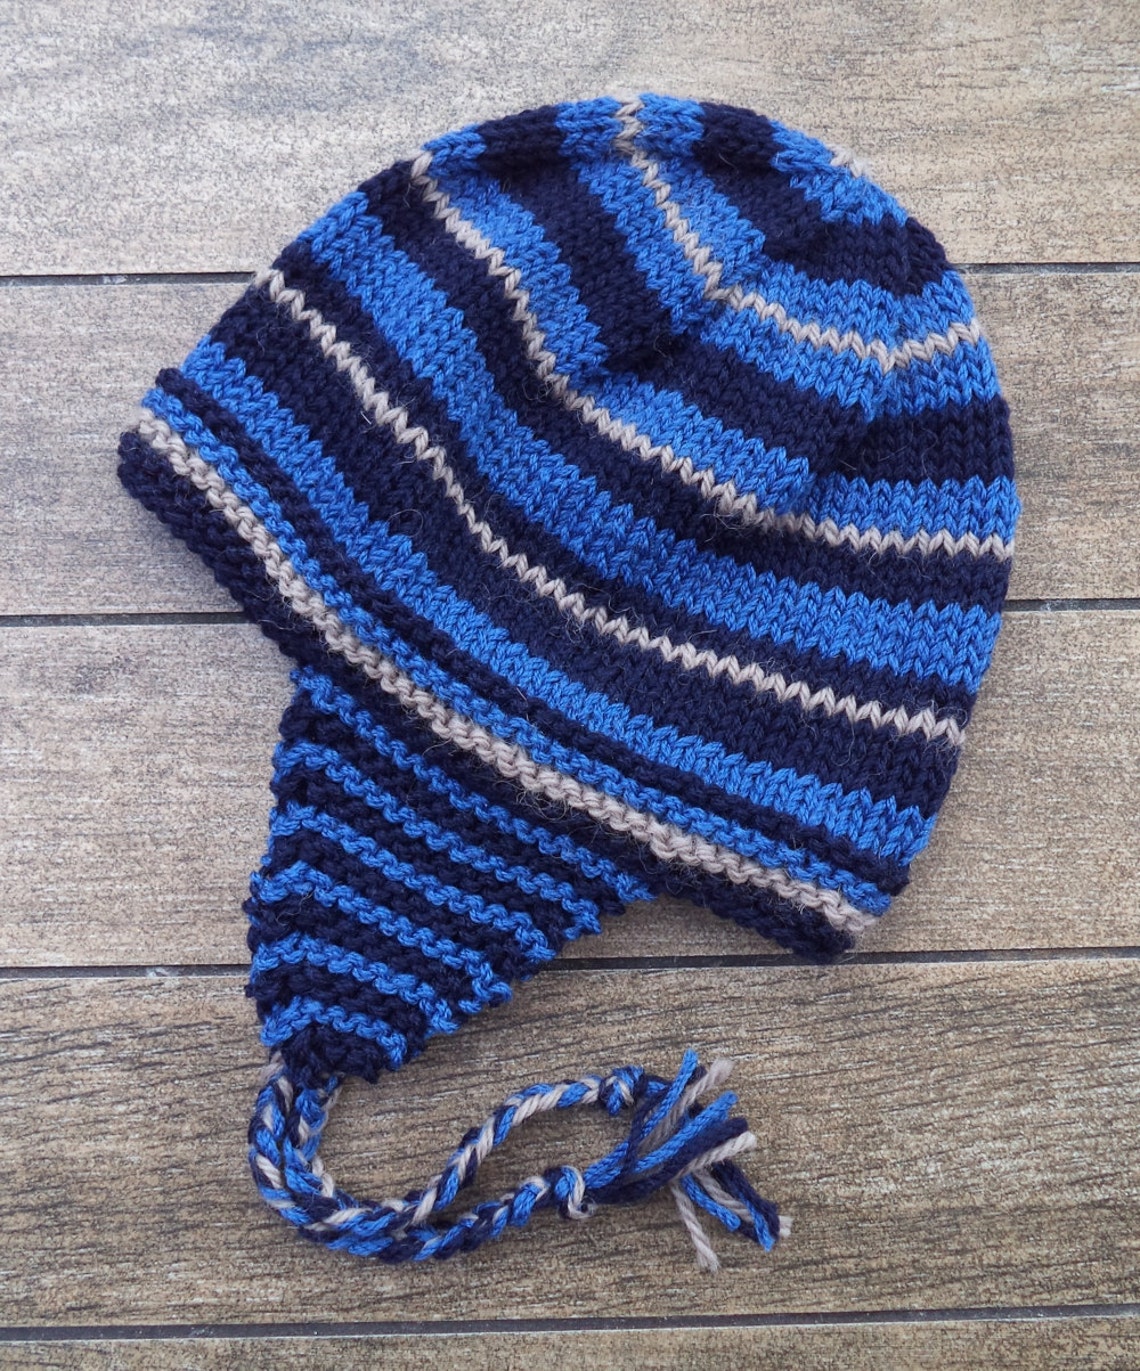 Knitting PATTERN Ear Flap Knit Beanie for Winter Easy Knit - Etsy